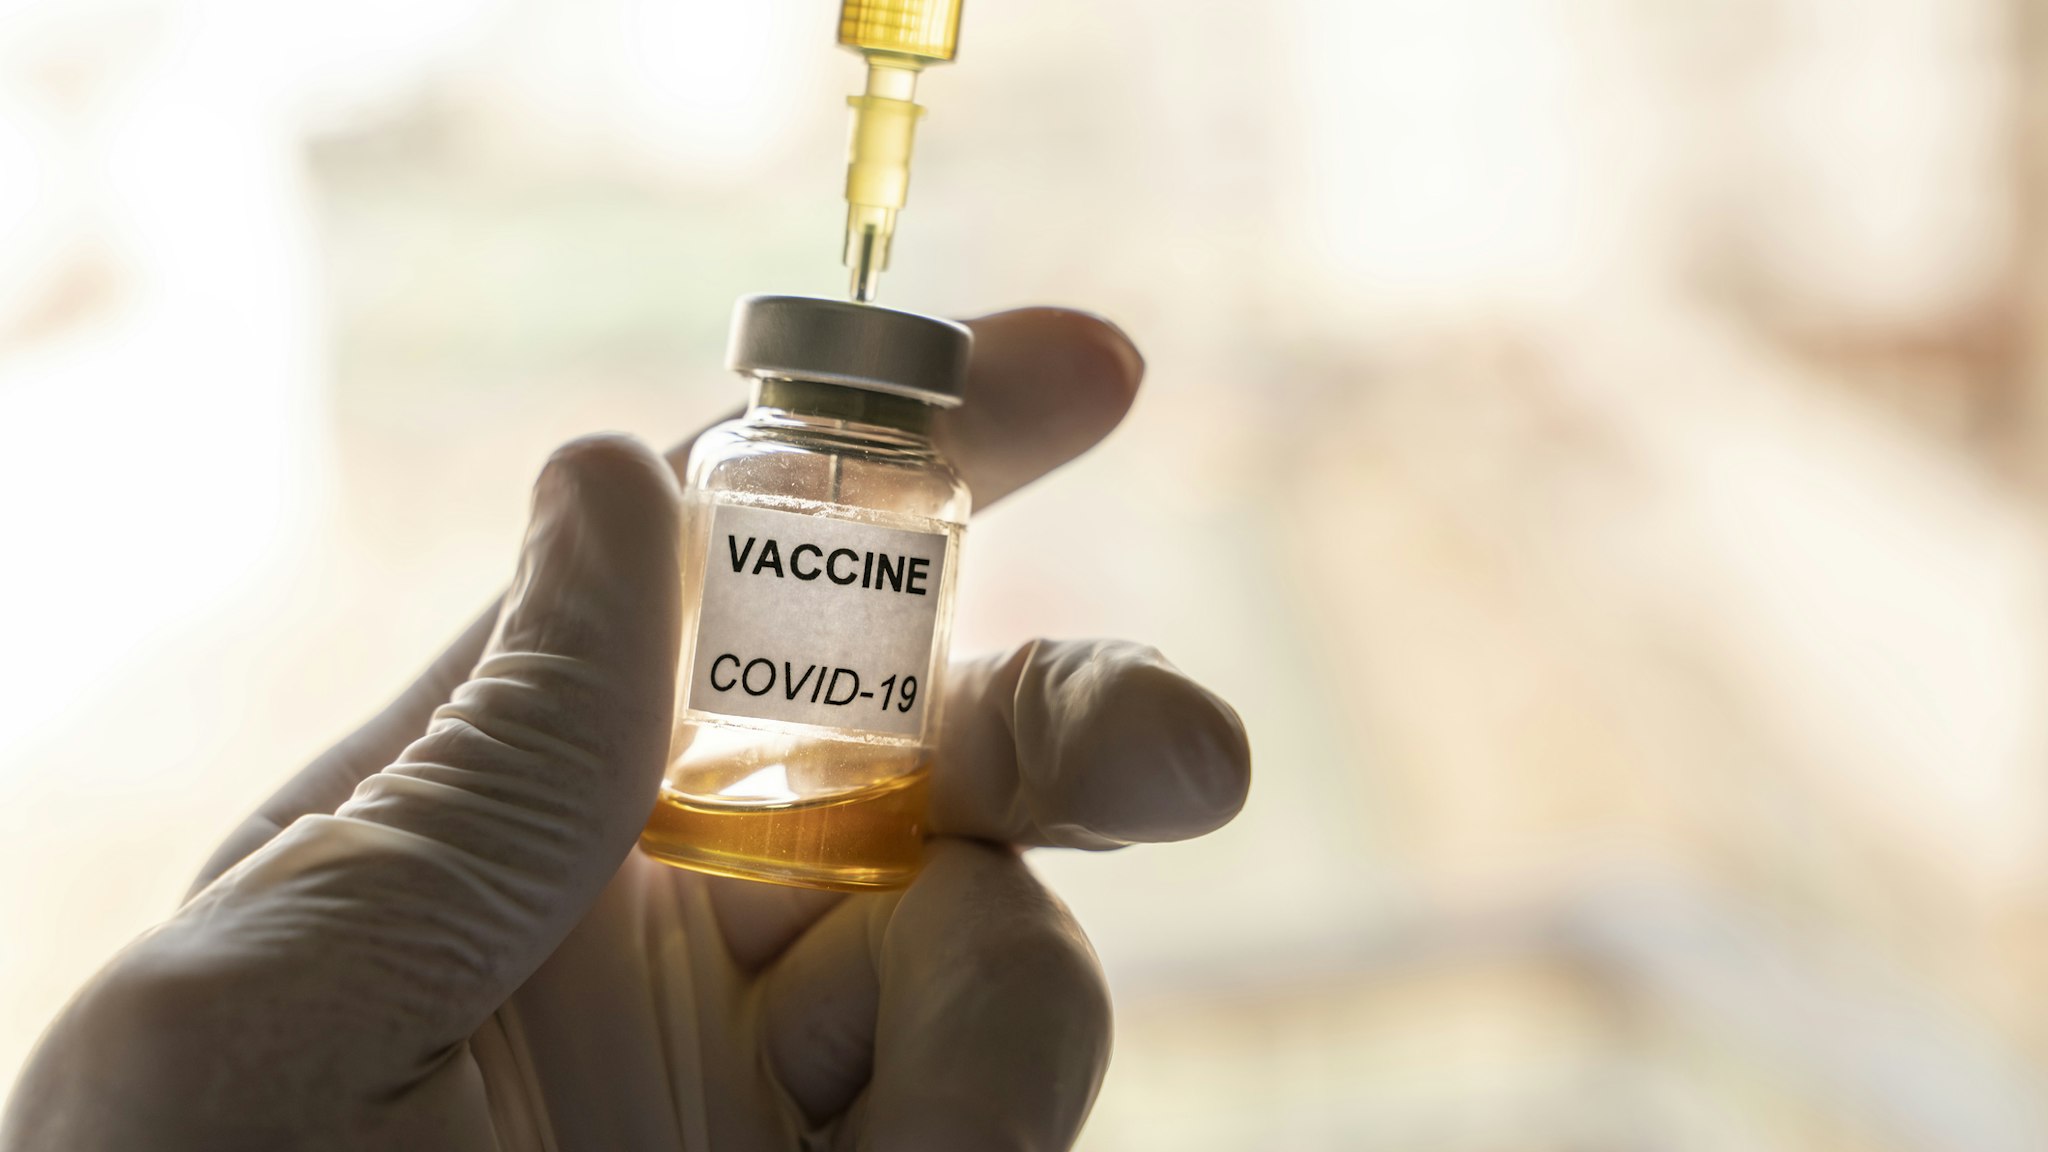 Coronavirus Covid-19 Vaccine - stock photo